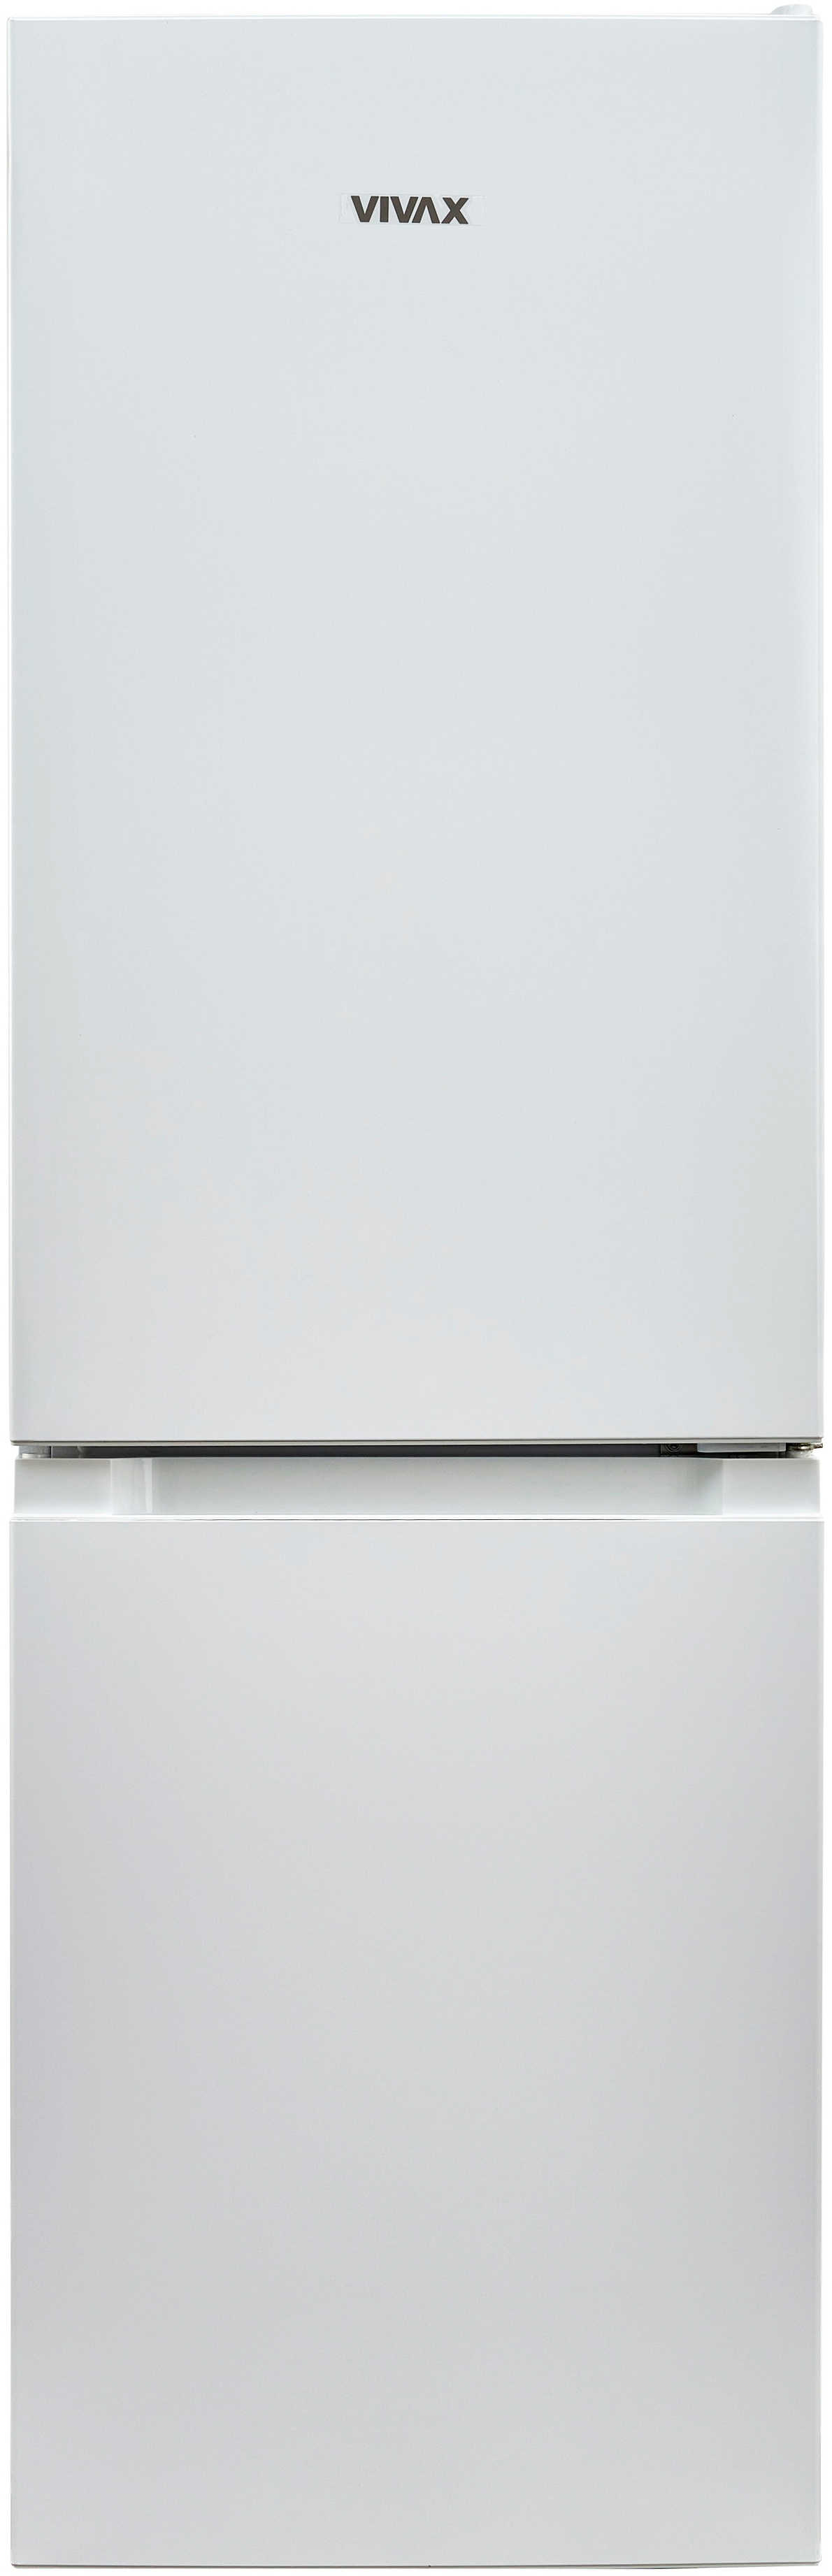 Холодильник Vivax CF-174 LF W в интернет-магазине, главное фото